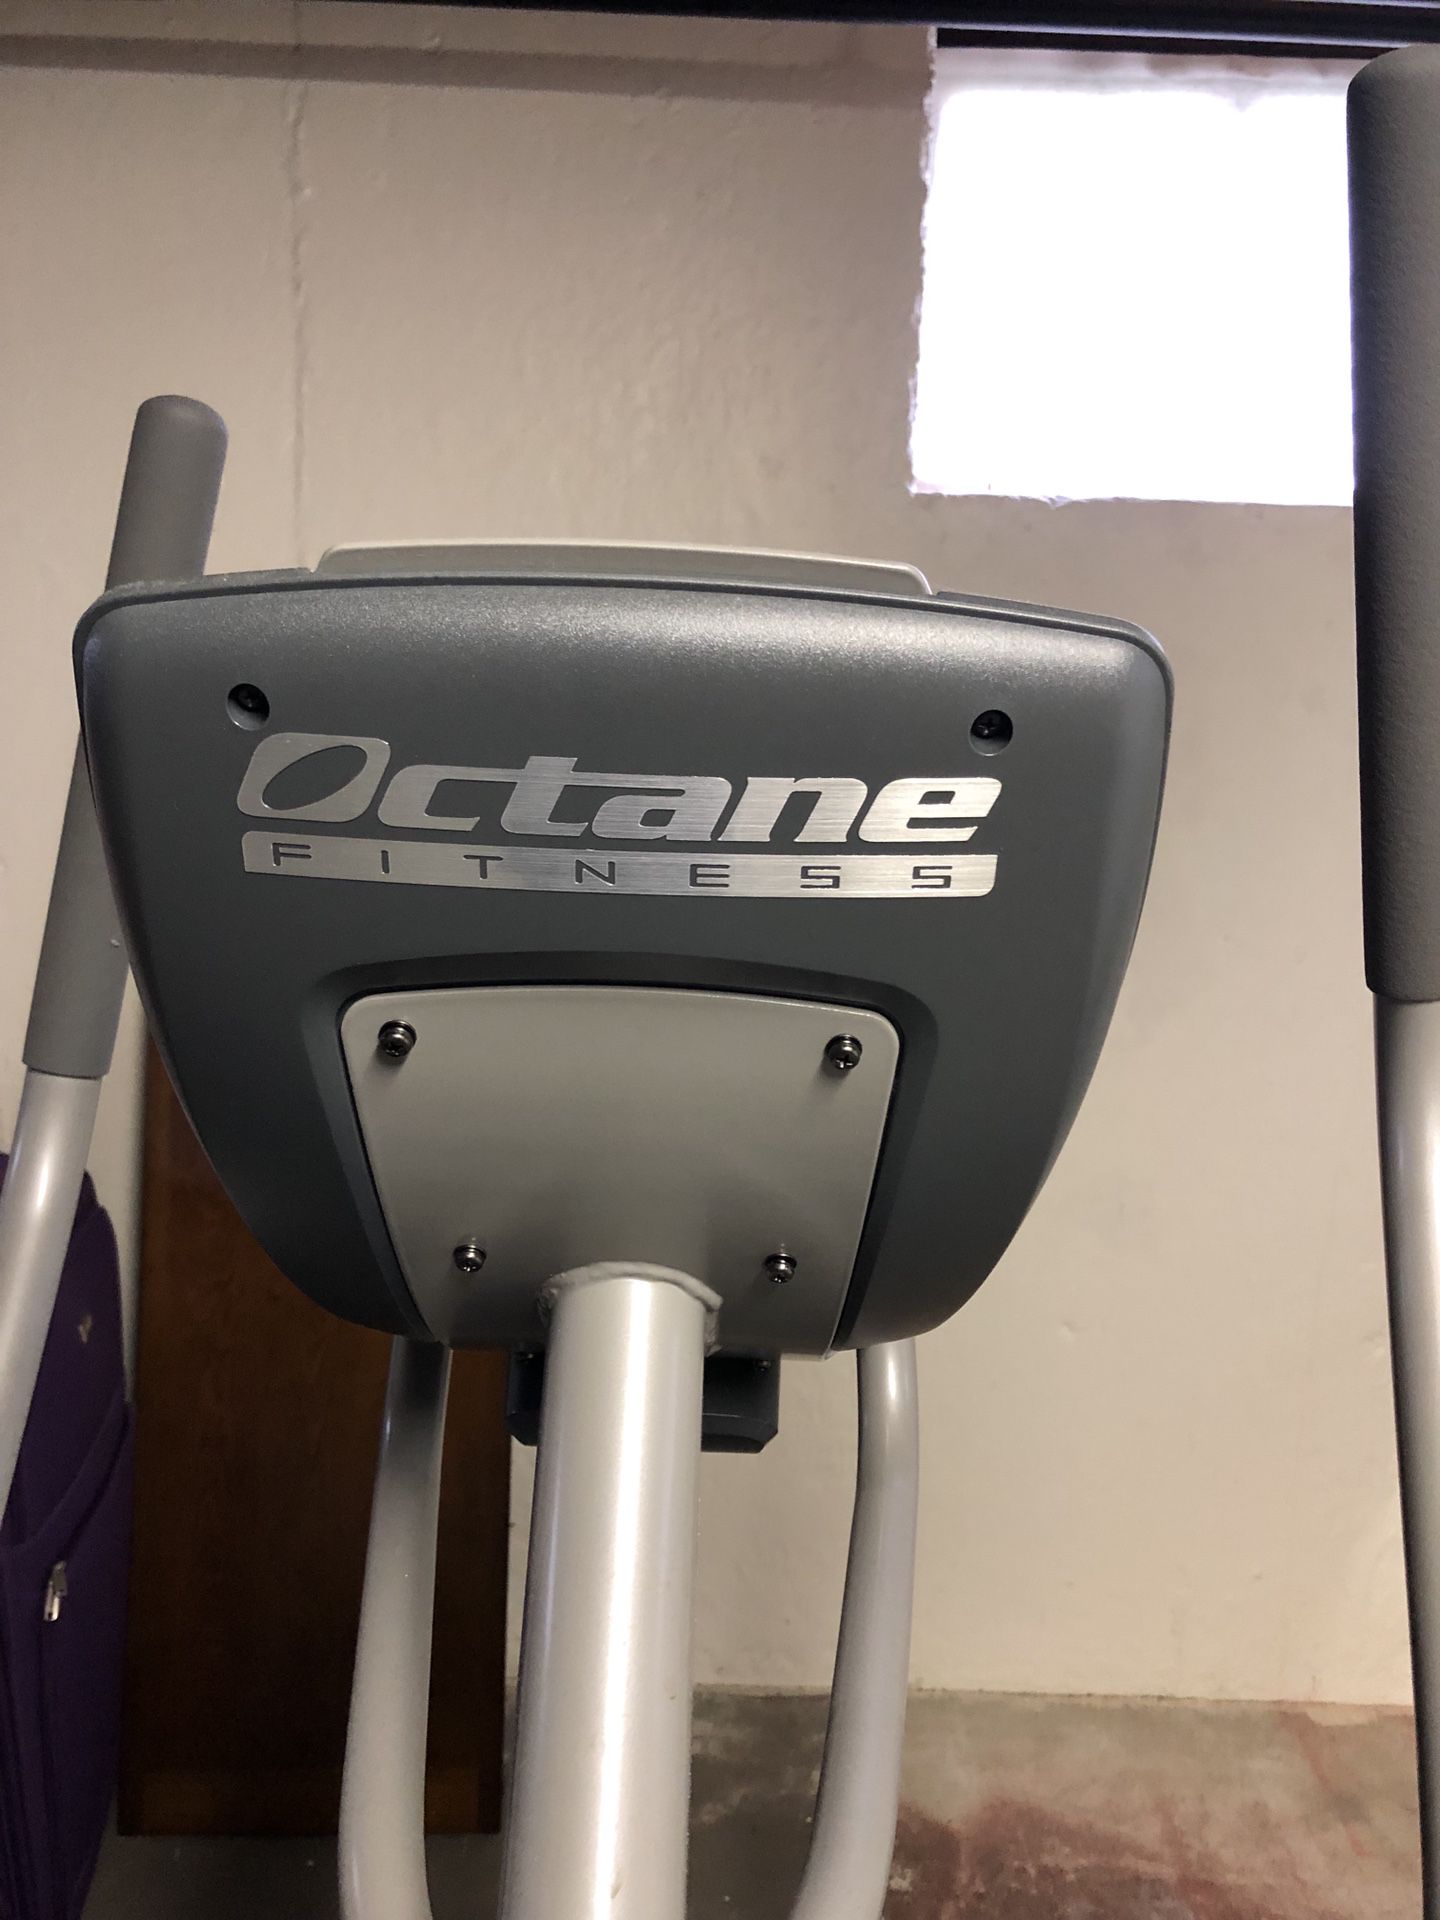 Octane fitness elliptical